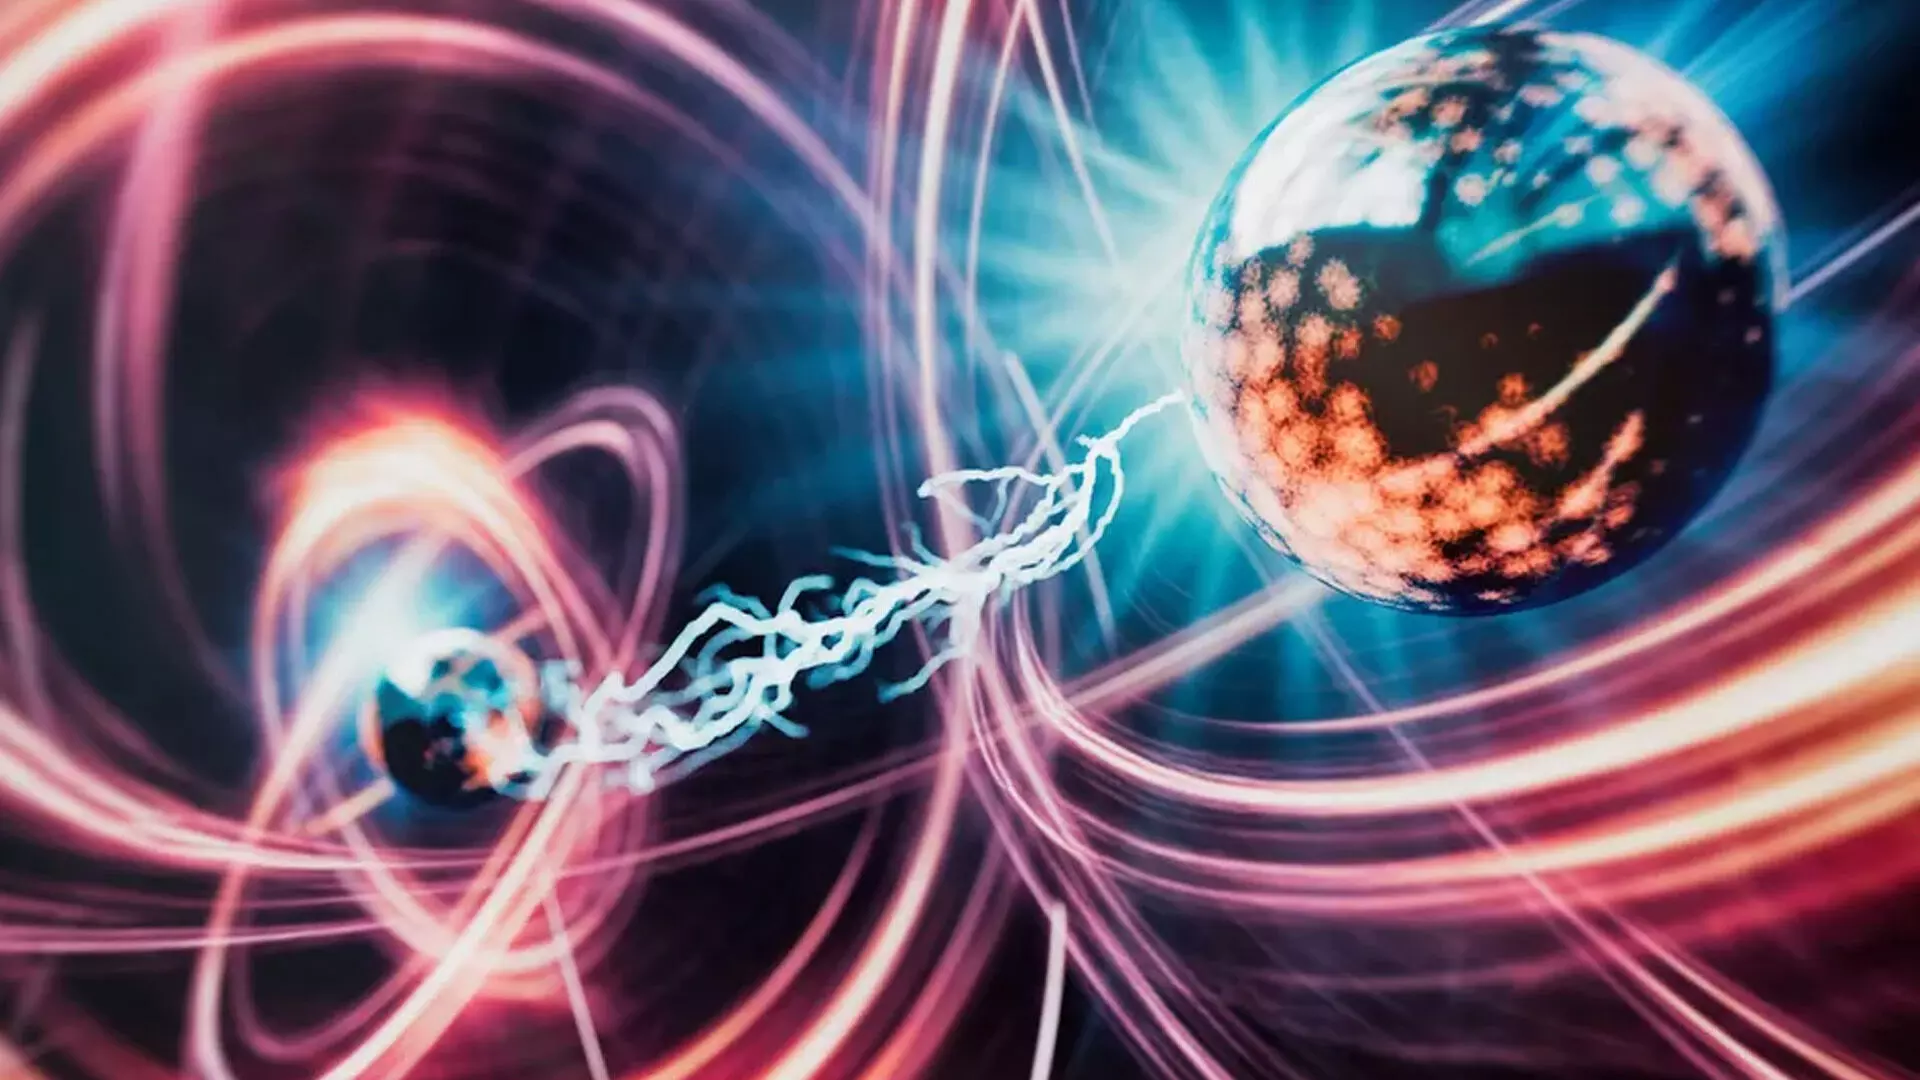 परमाणु पहले से कहीं अधिक एक-दूसरे के करीब आ गए, जिससे असंभव प्रतीत होने वाले क्वांटम प्रभाव प्रकट हुए